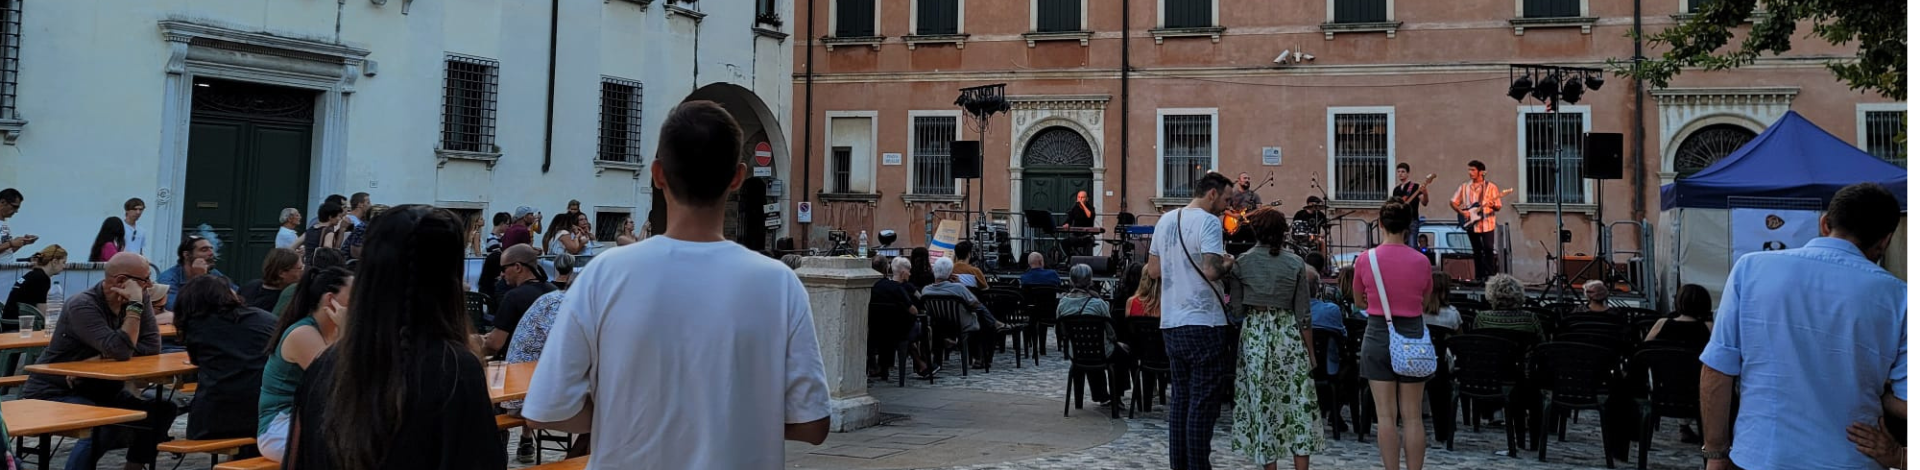 Festival Good Vibes: esplosione di energia e creatività nel cuore di Treviso!